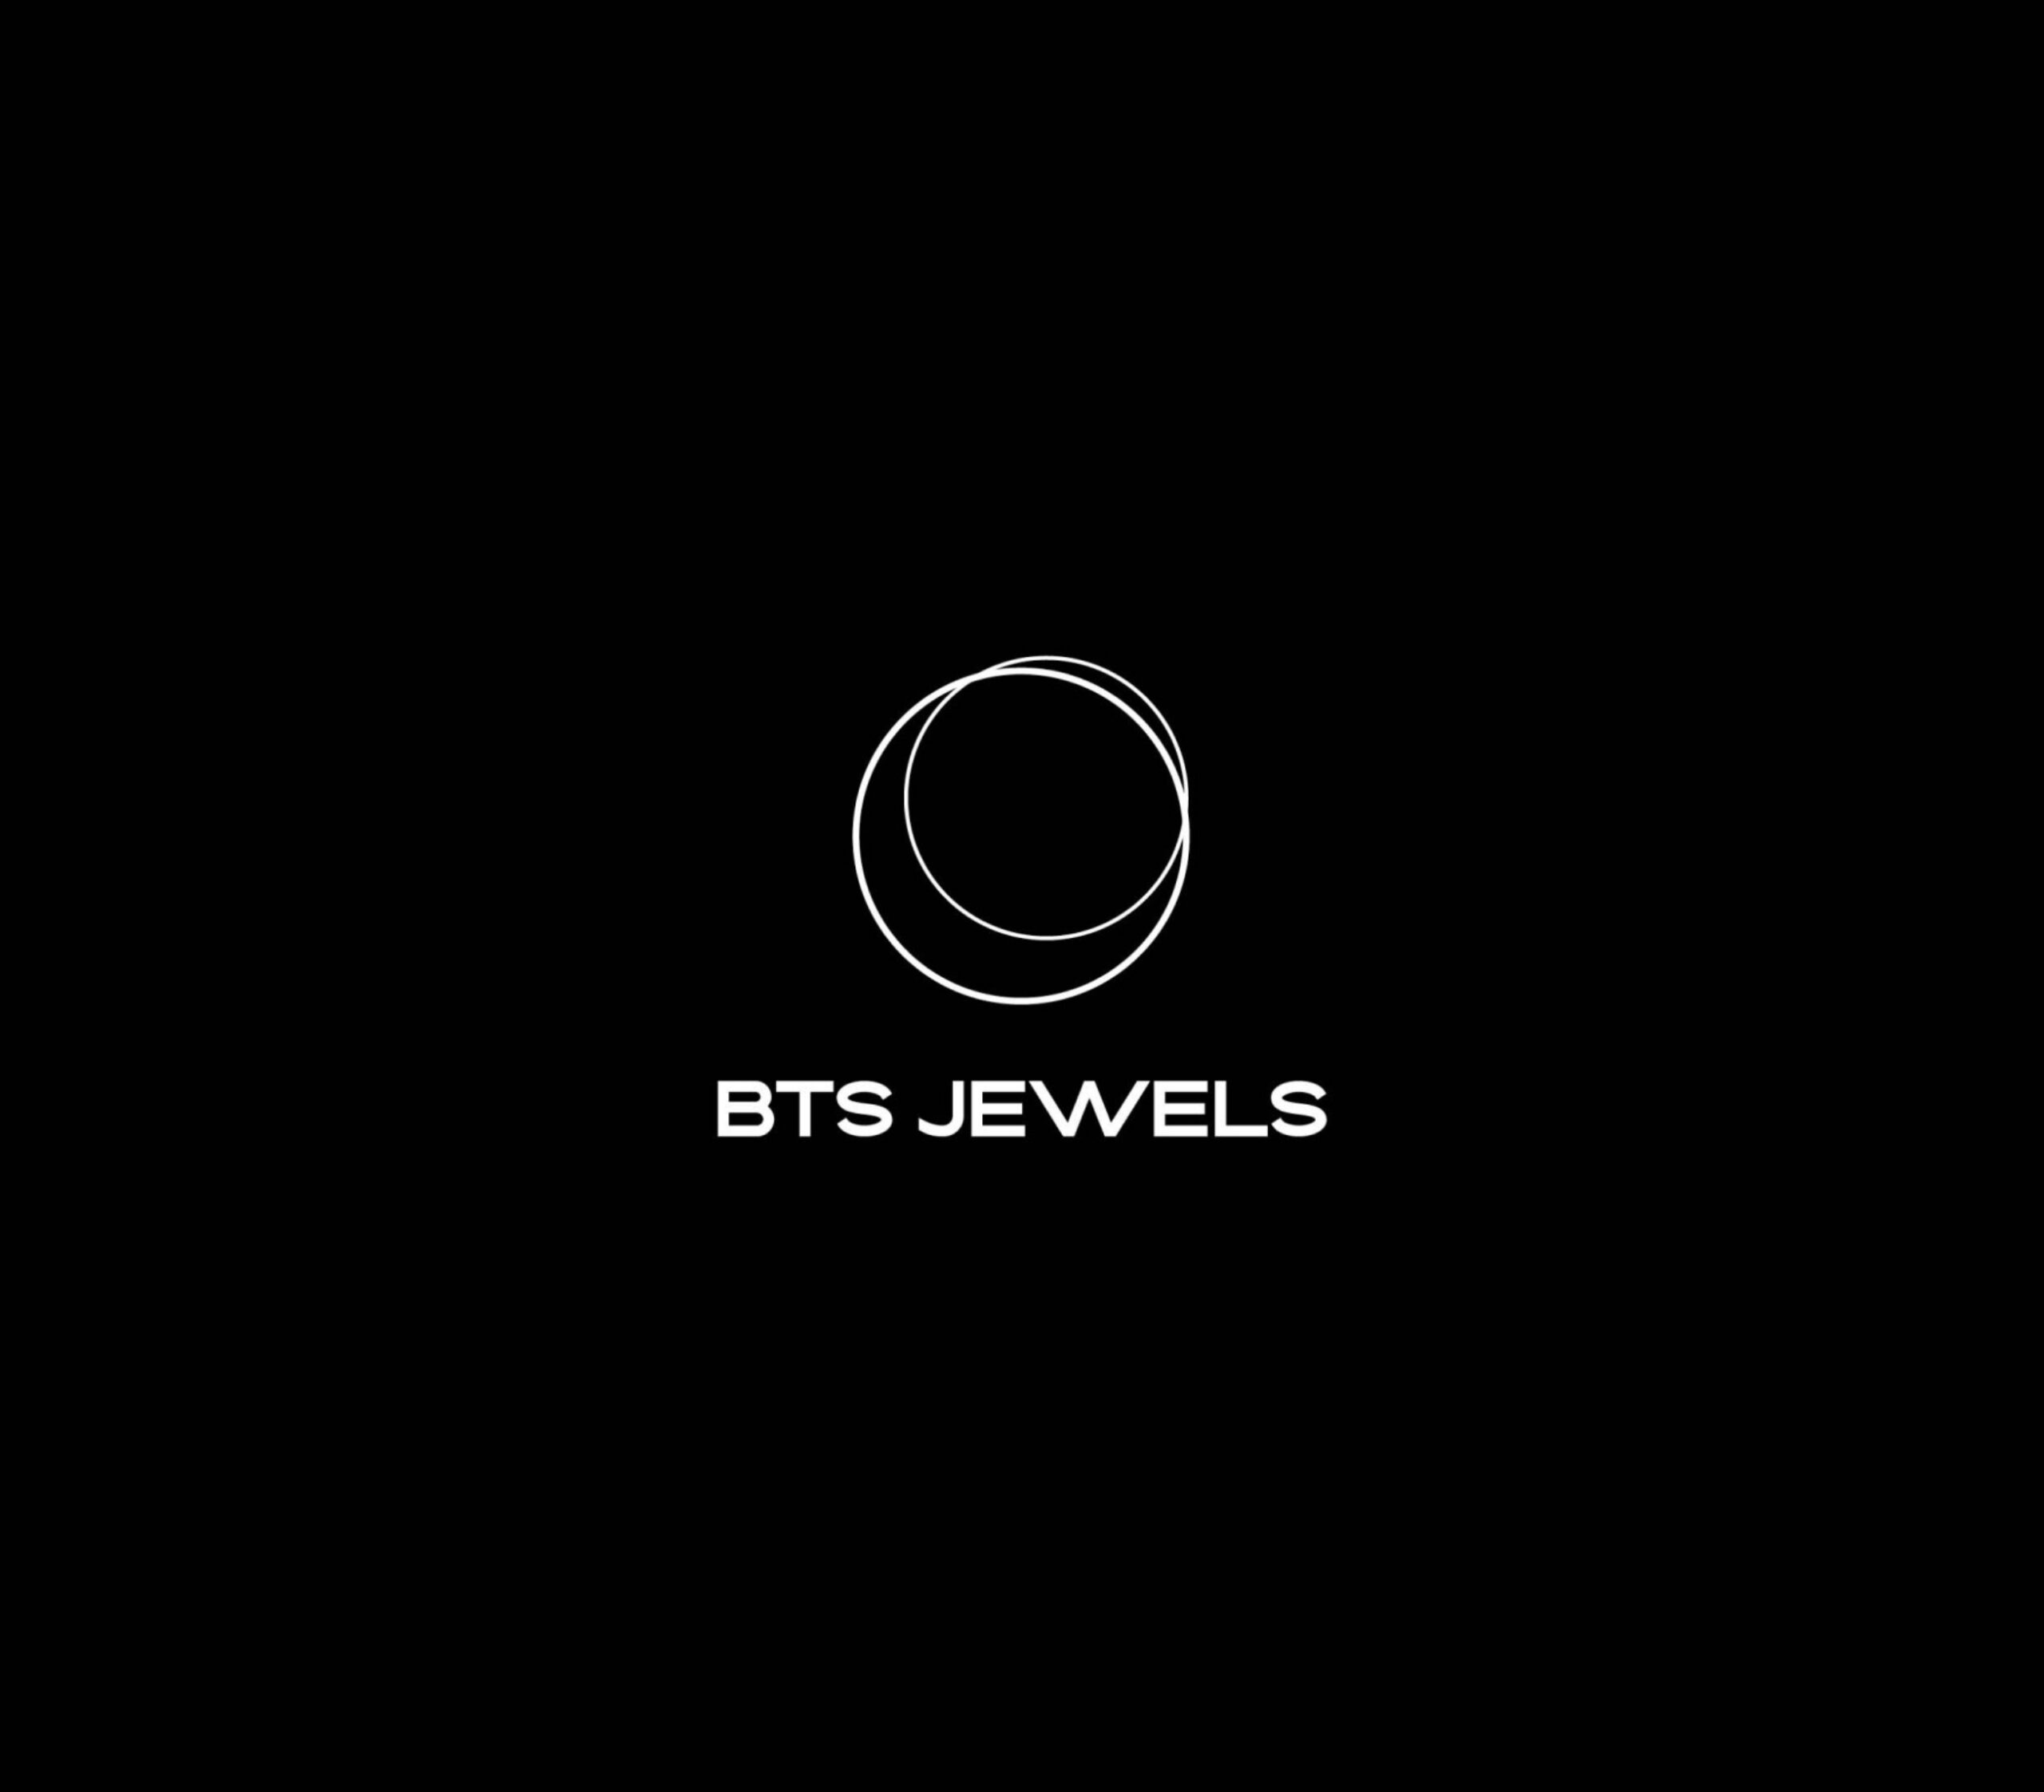 BTS Jewels FORT07 01 02 1804x0